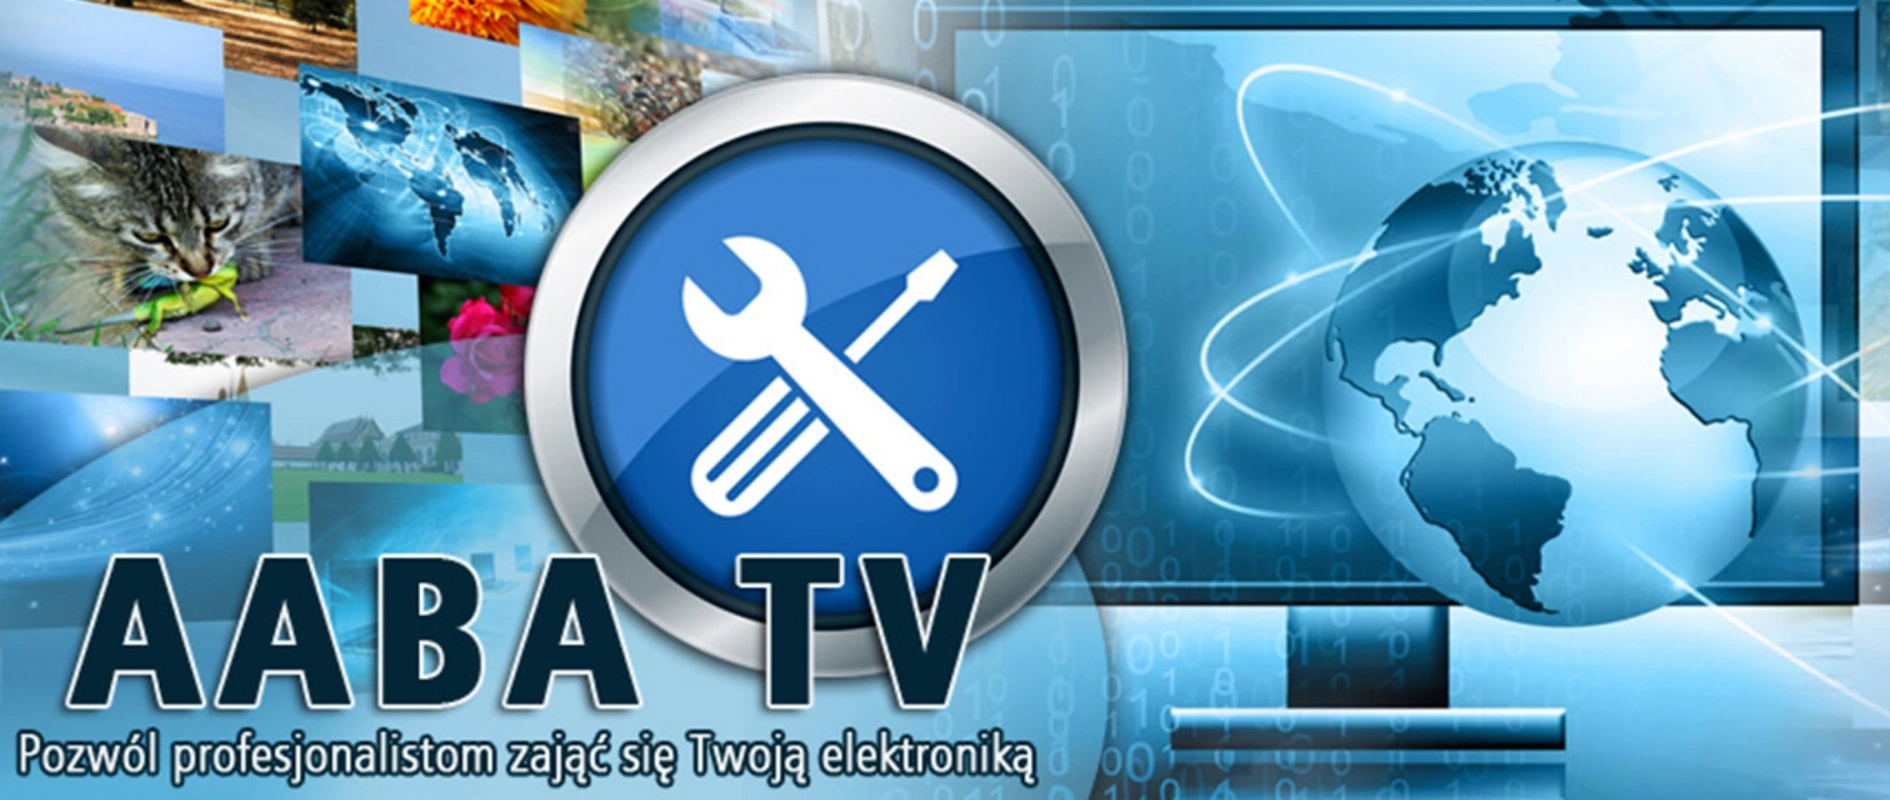 AABA TV